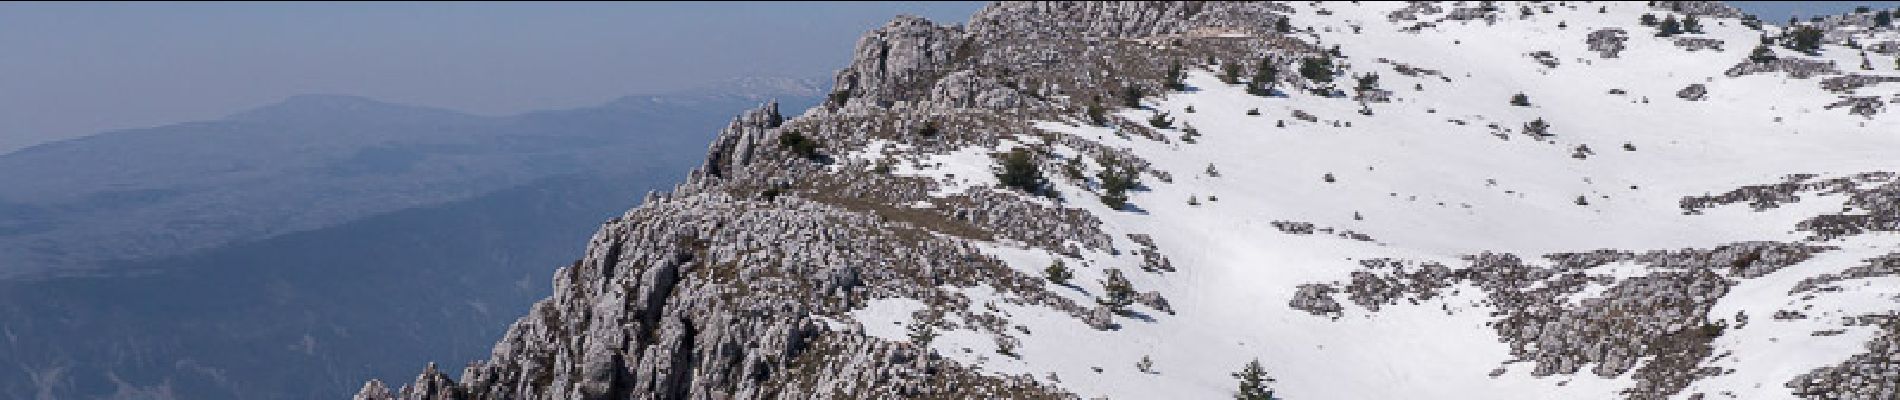 Randonnée Marche Gréolières - Traversée de la Montagne du Cheiron 1778m, depuis les Hautes Gréolières - Photo